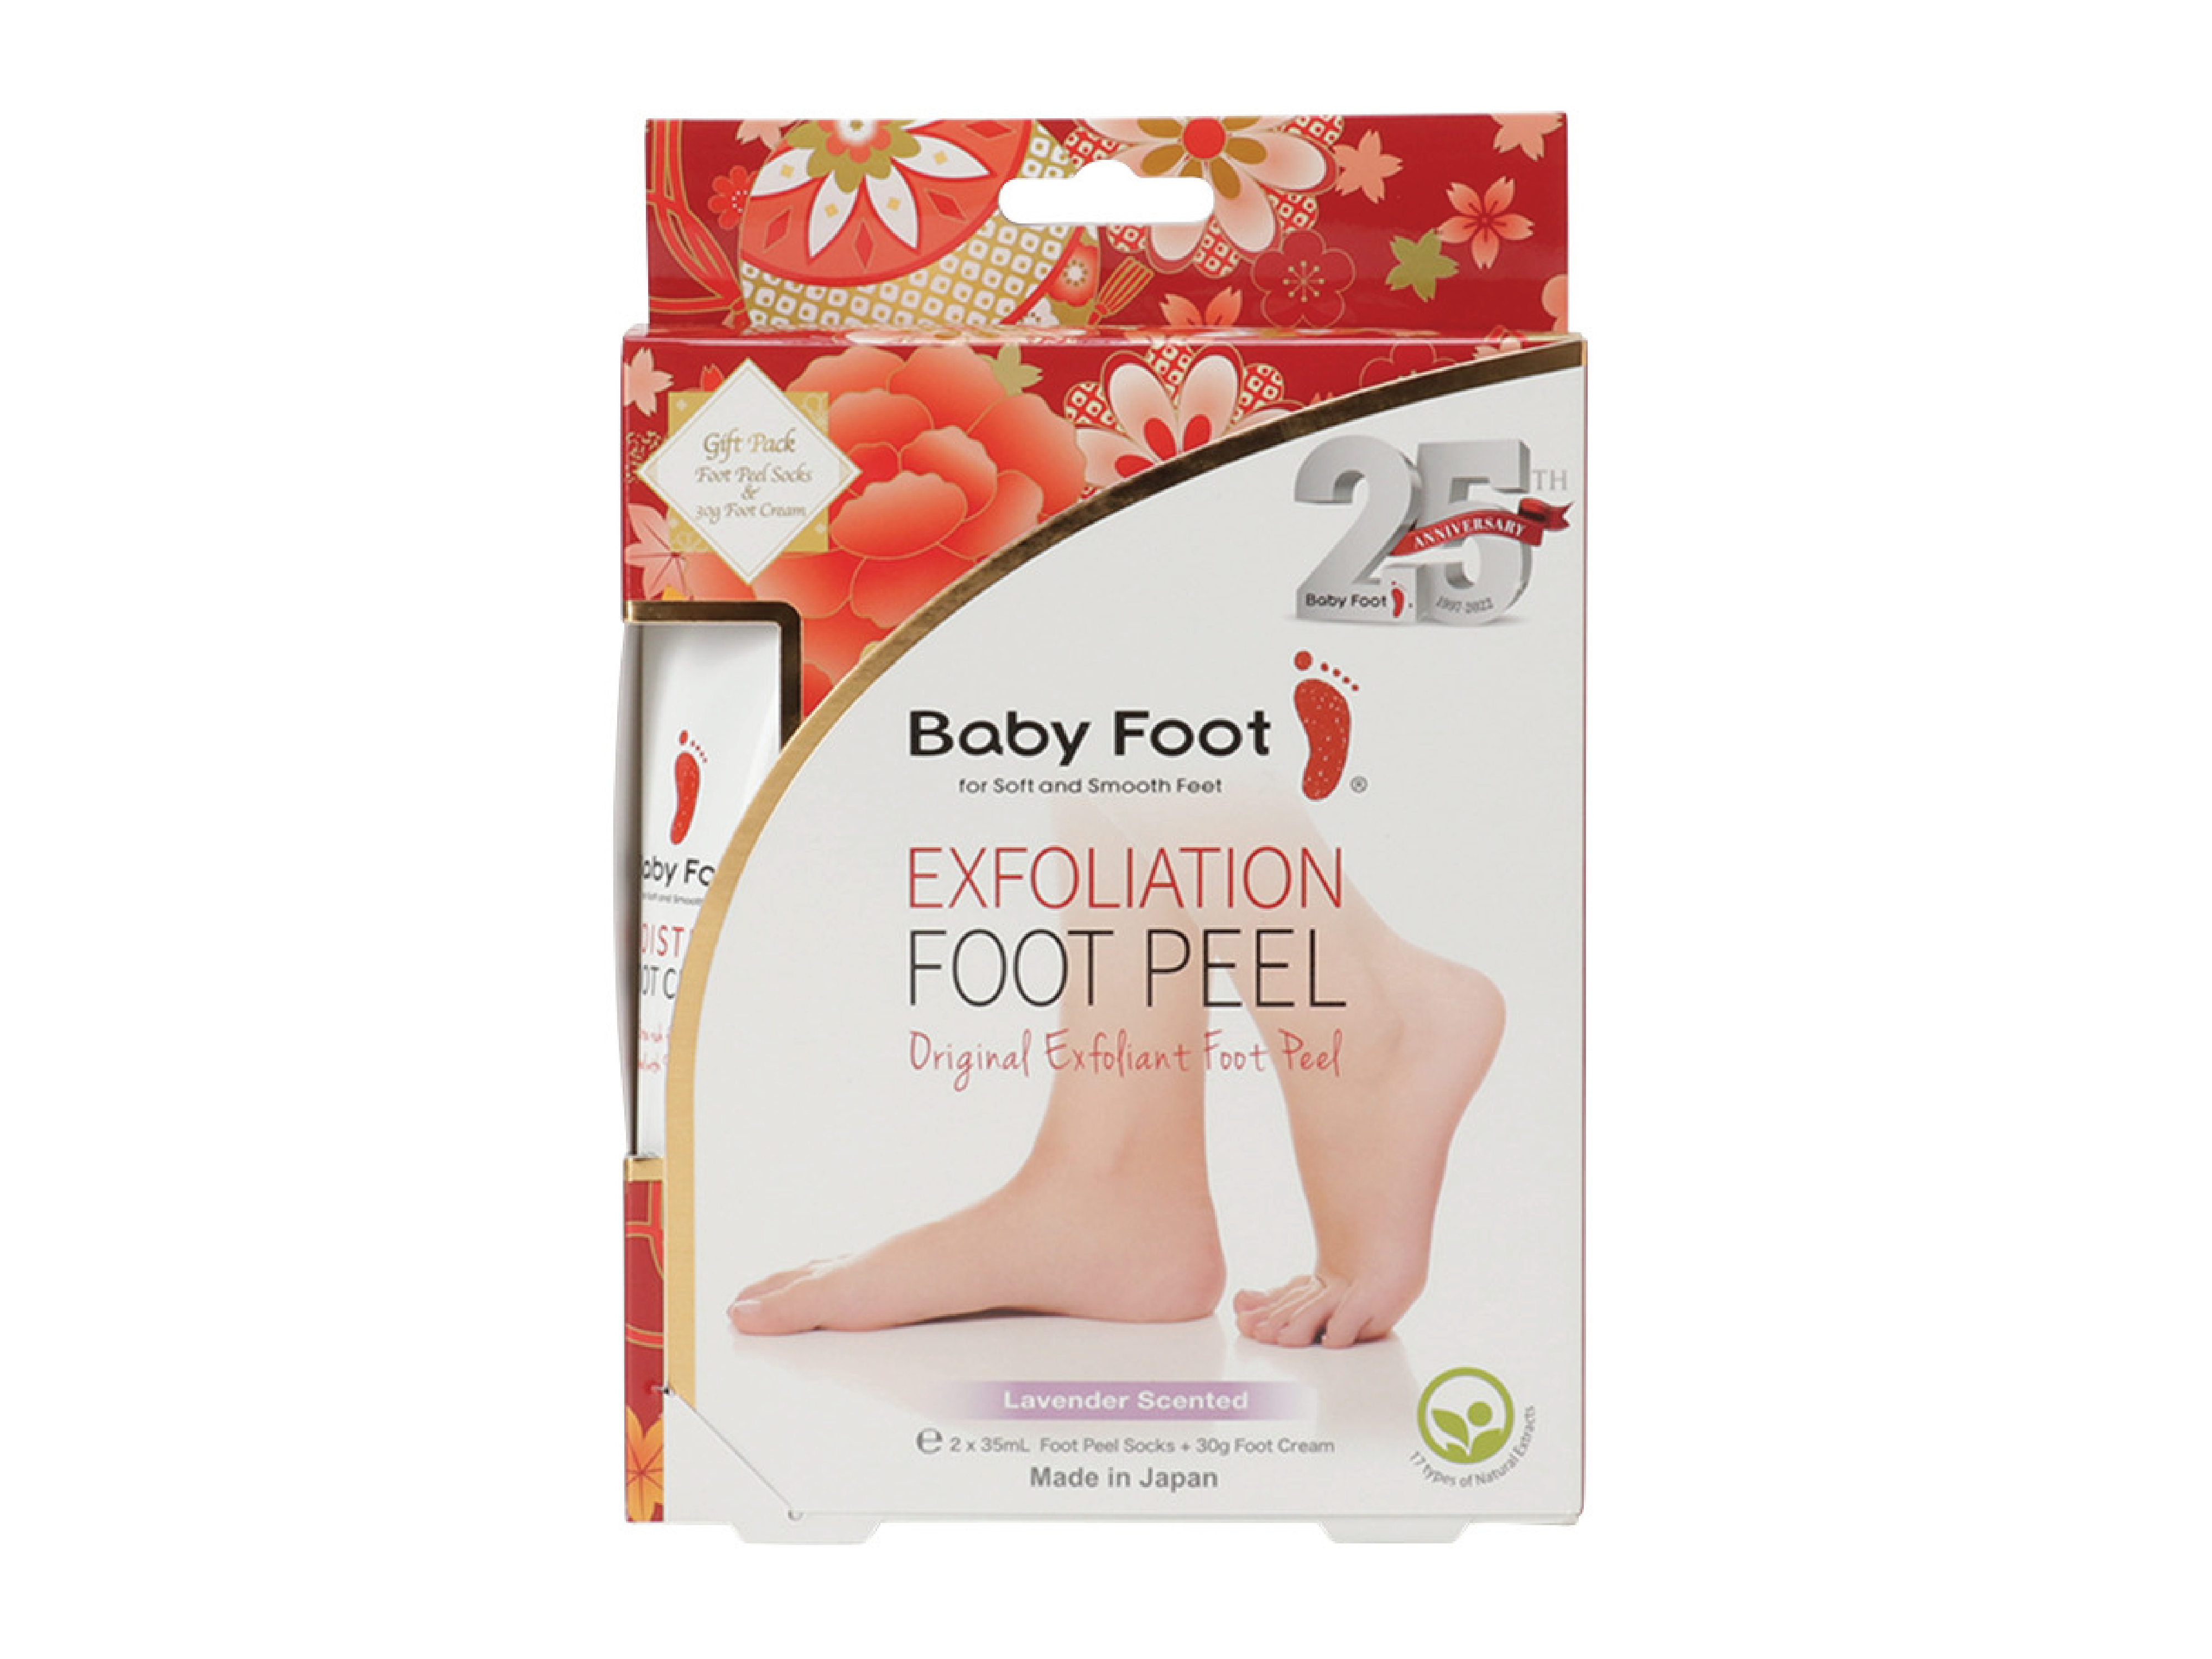 Baby Foot Exfoliation Foot Peel Gift Pack, 1 stk.